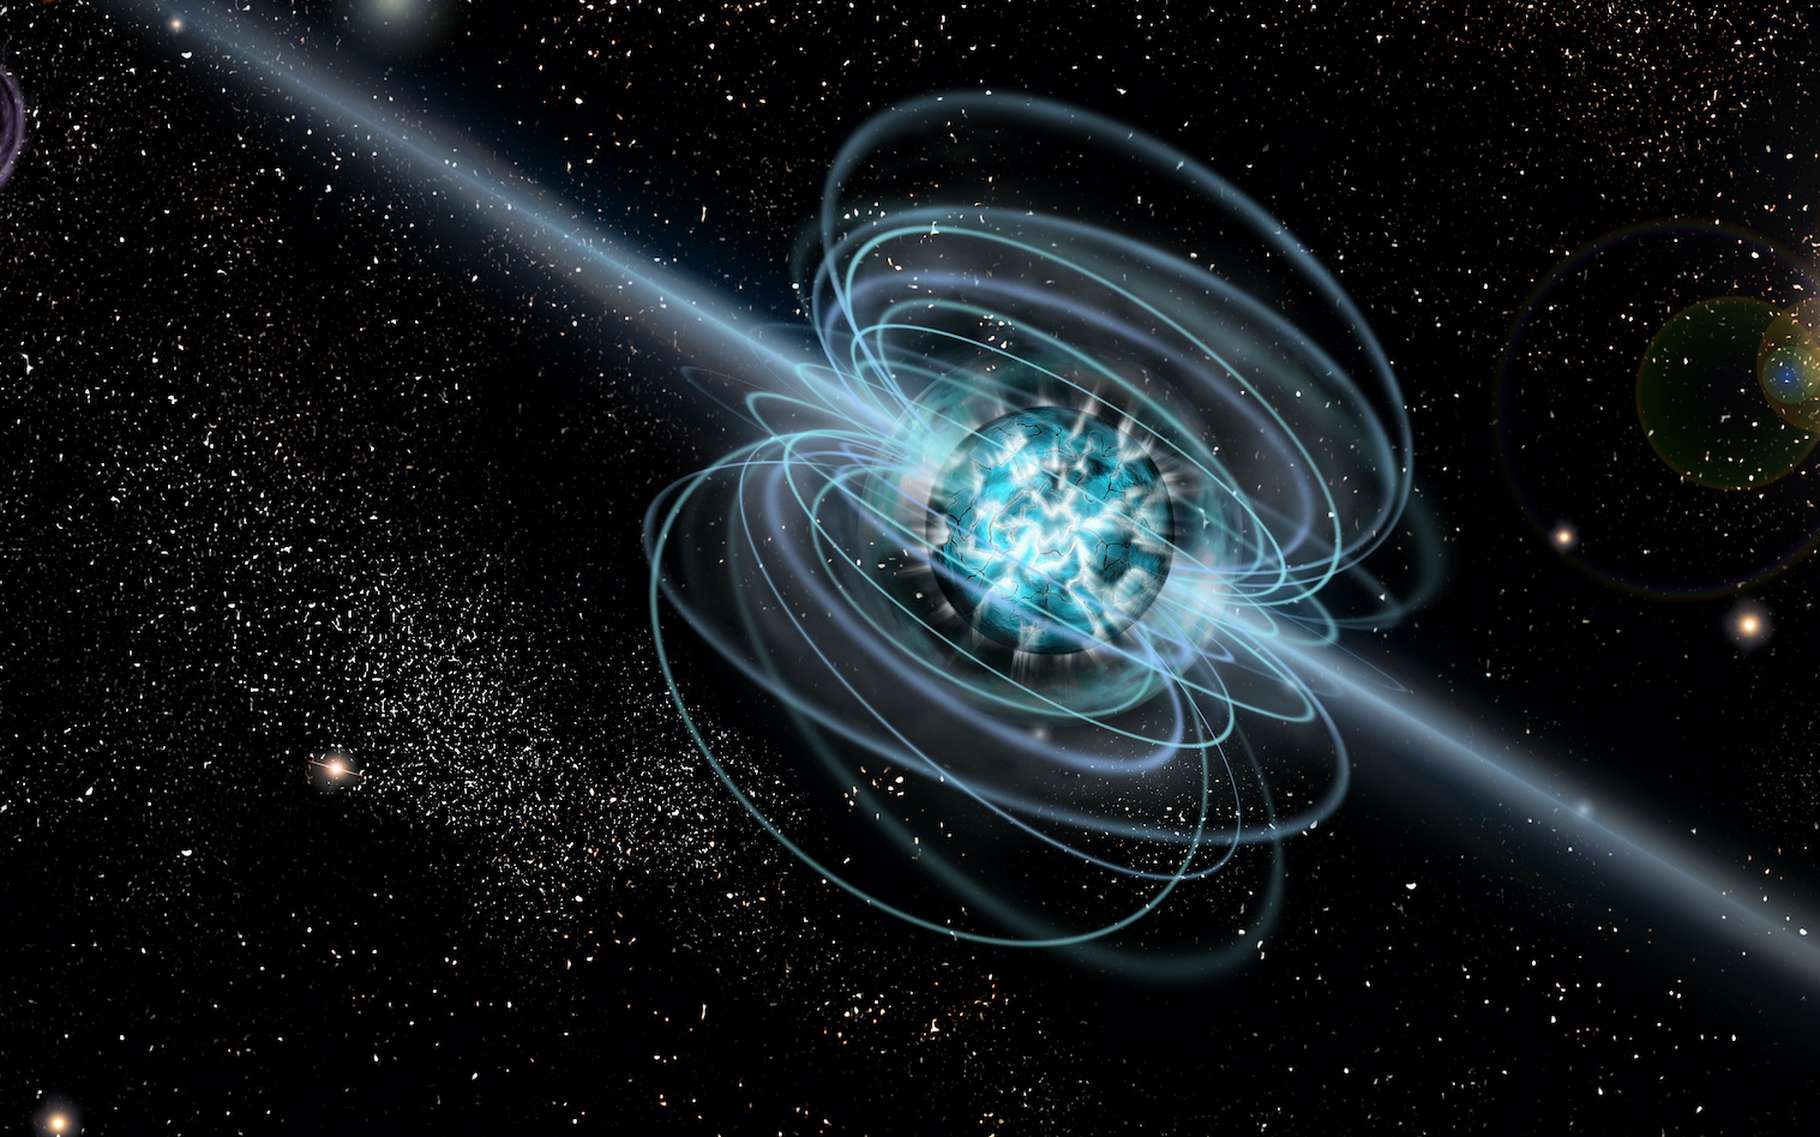 Des astronomes ont pu analyser dans le détail l’éruption d’un magnétar situé en dehors de la Voie lactée. © dracozlat, Adobe Stock